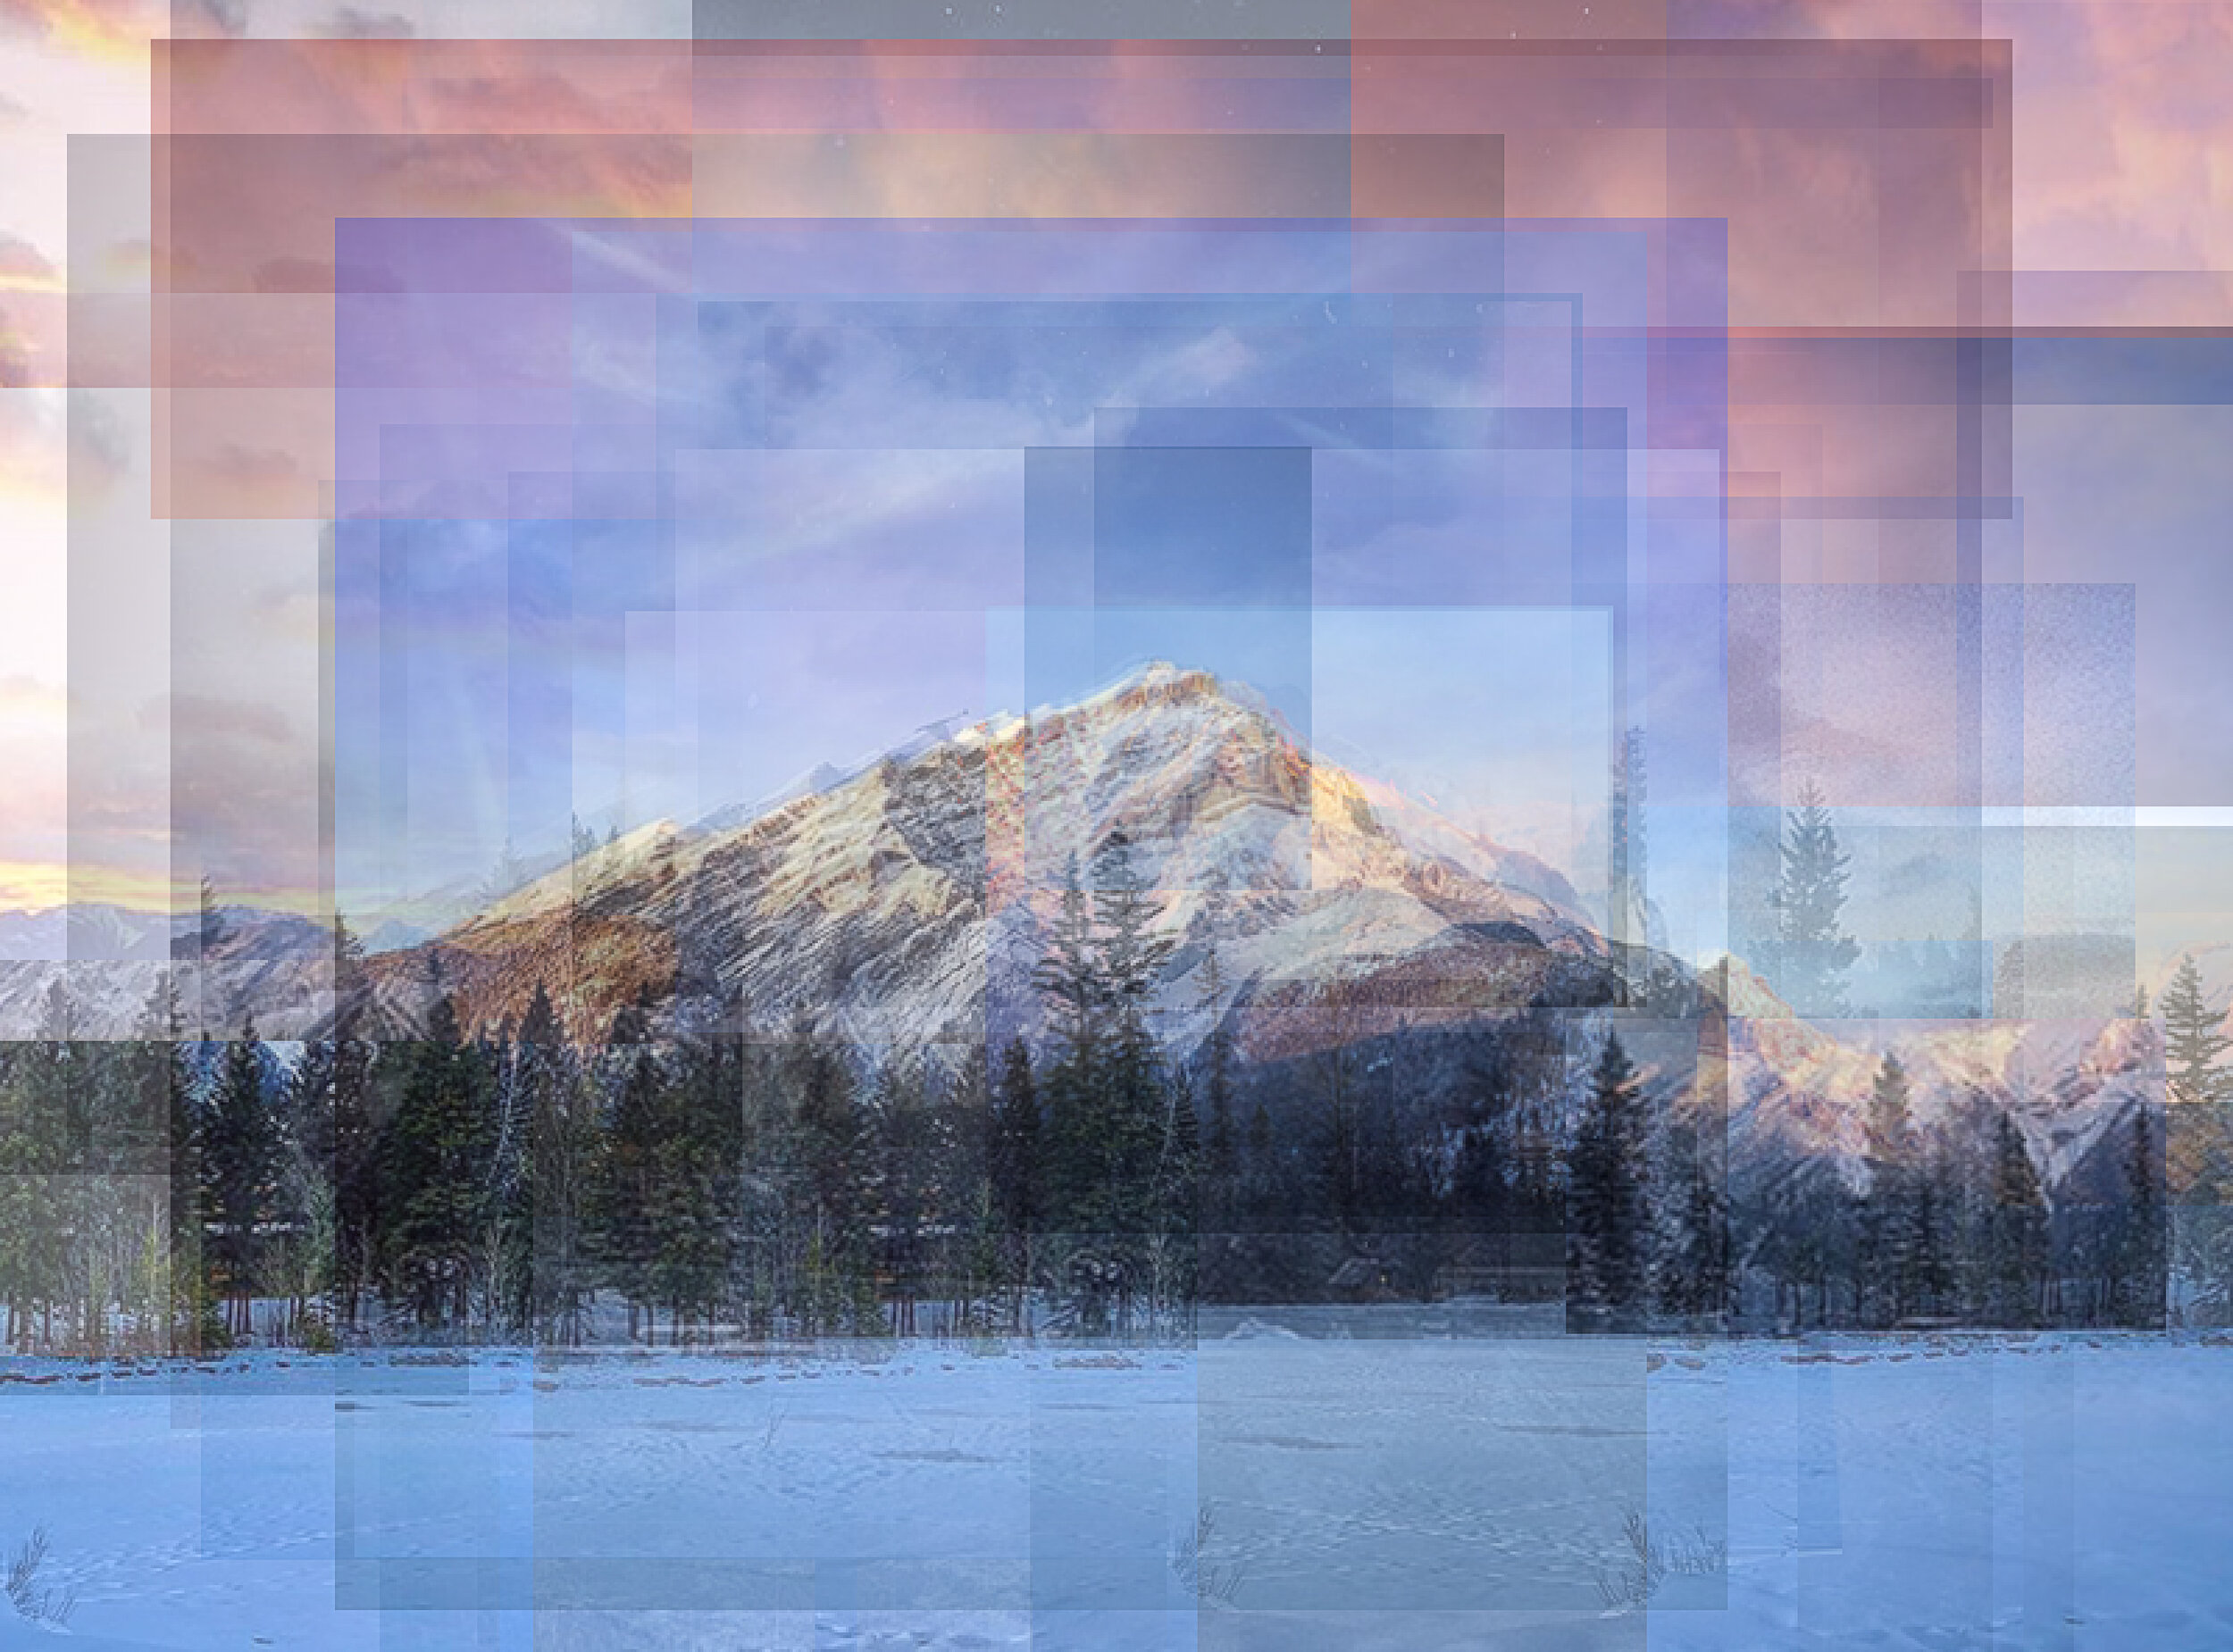 Cascade Mountain, Banff, Alberta, Canada, for @alliesgallery